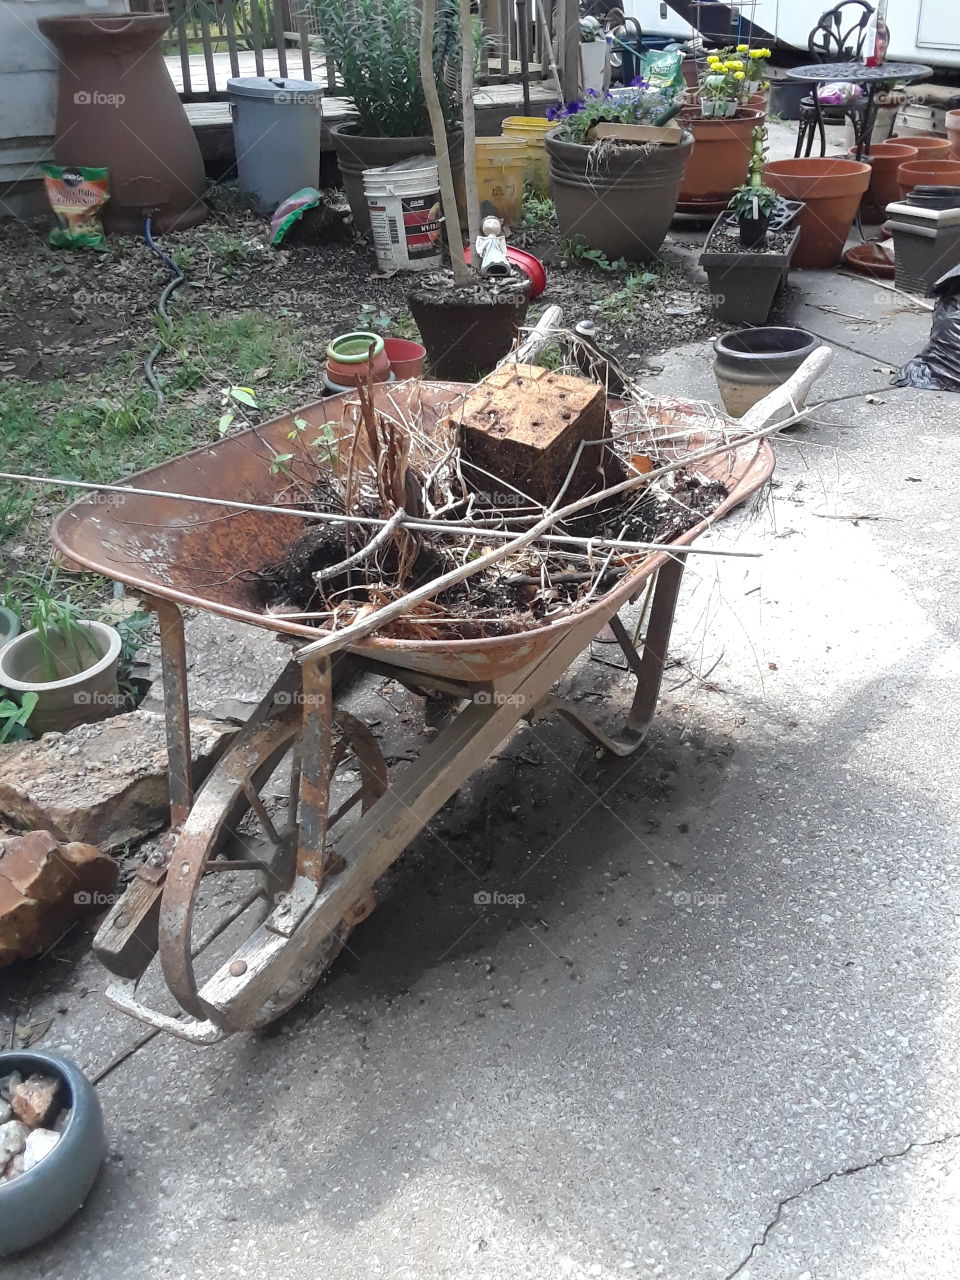 old wheelbarrow in a garden